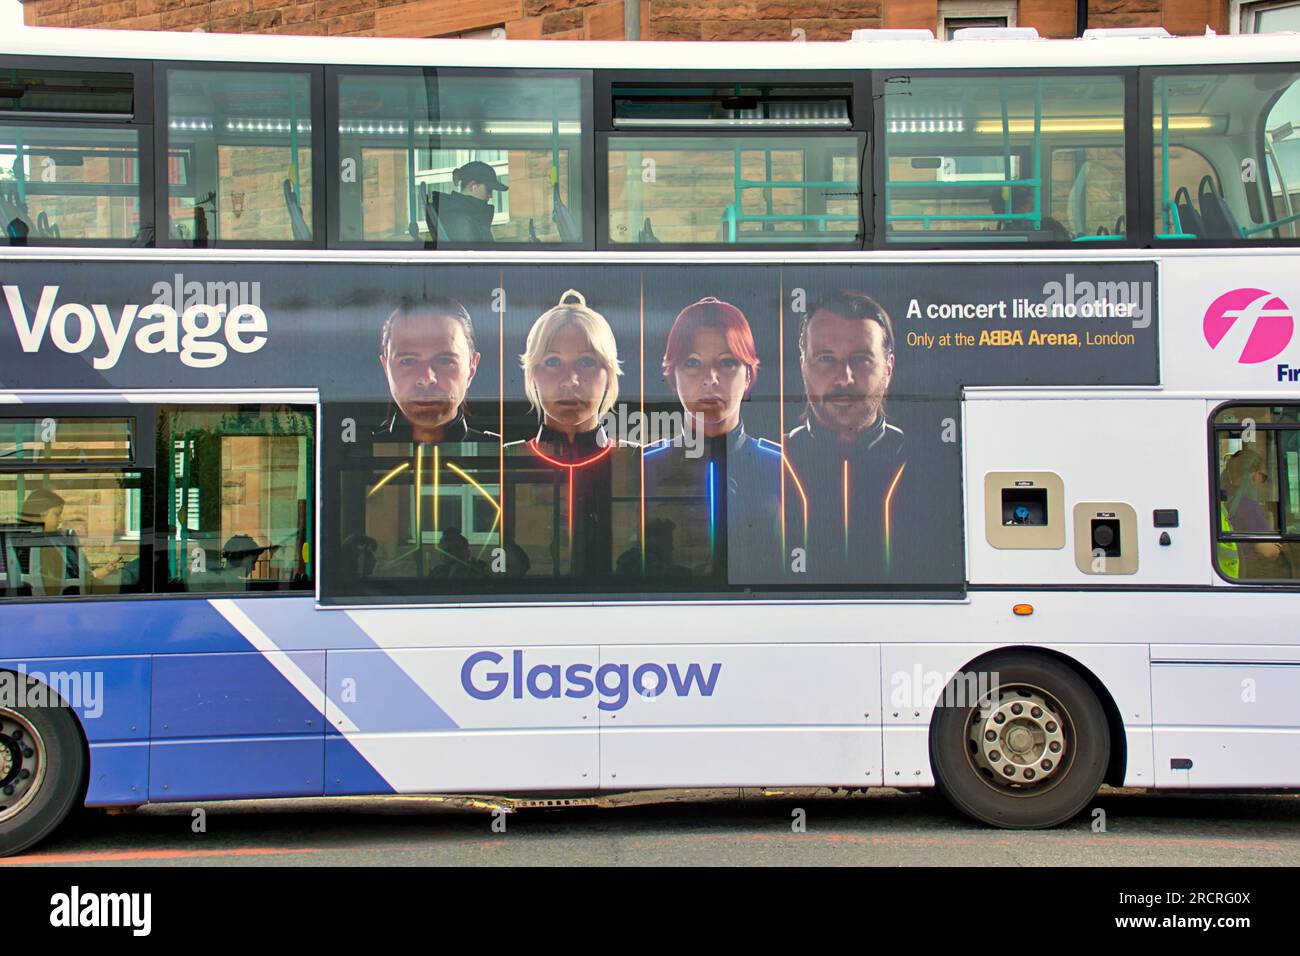 Werbung für abba Voyage auf dem ersten Bus in glasgow Stockfoto